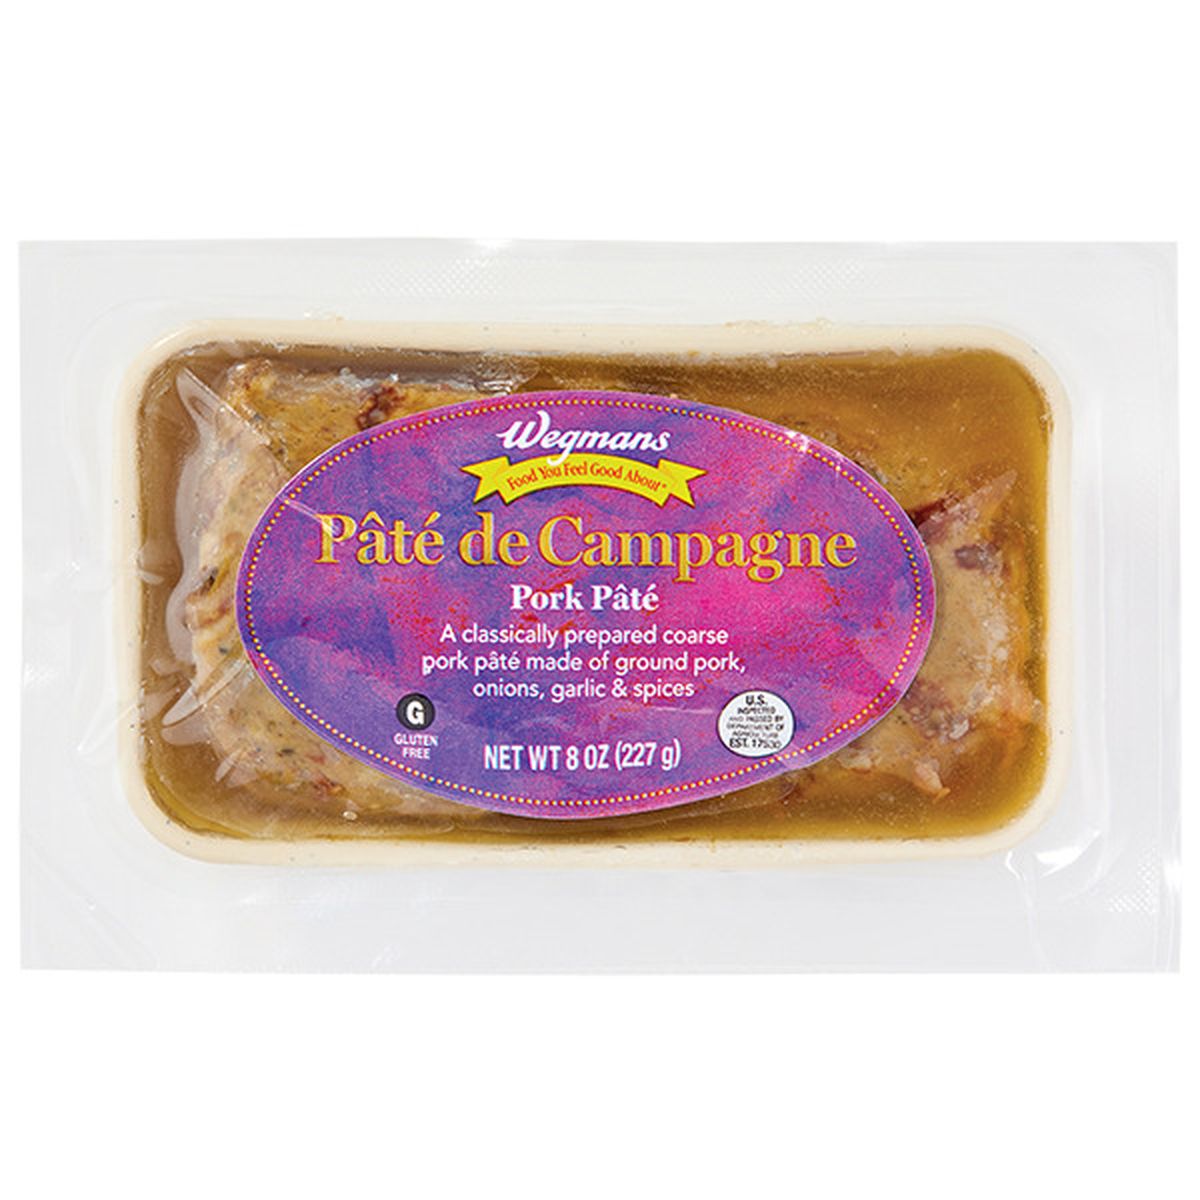 Calories in Wegmans PatÃ© de Campagne (Pork Pate)